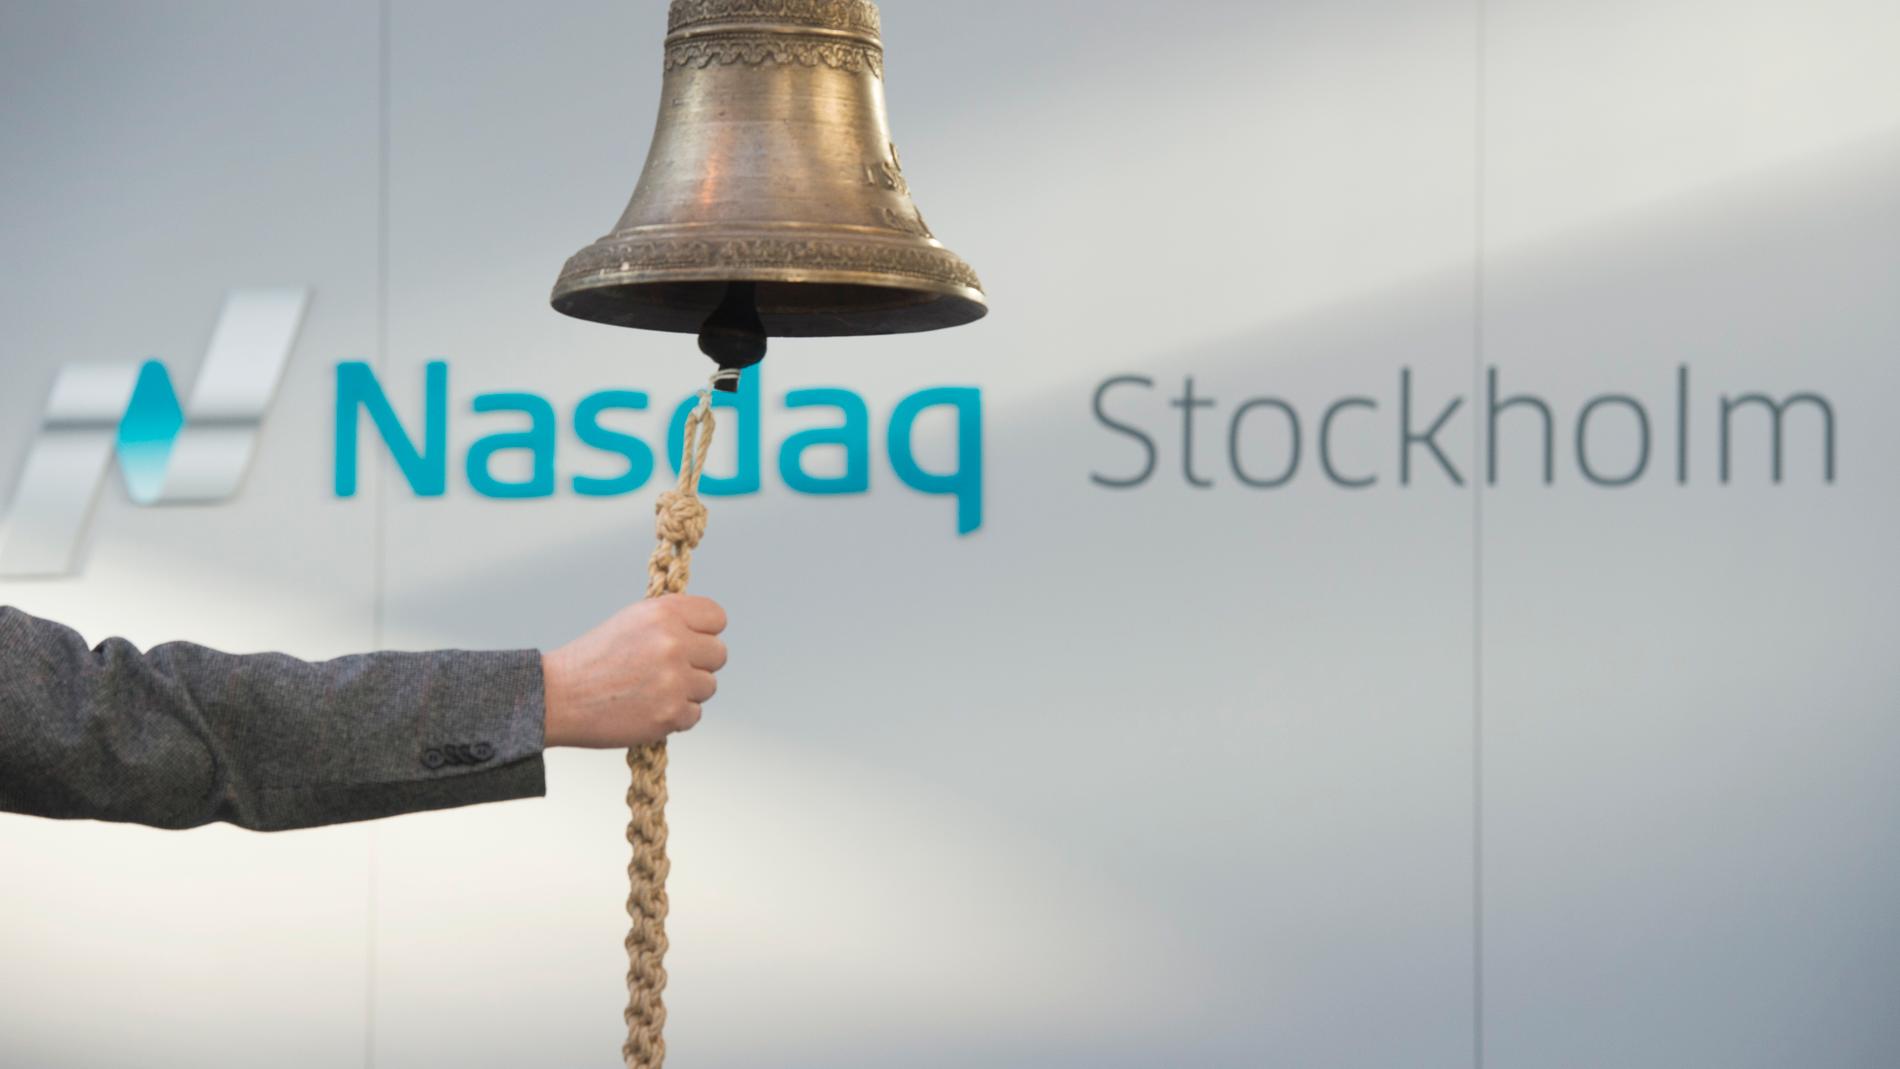 En ringklocka framför Nasdaq Stockholms logotyp